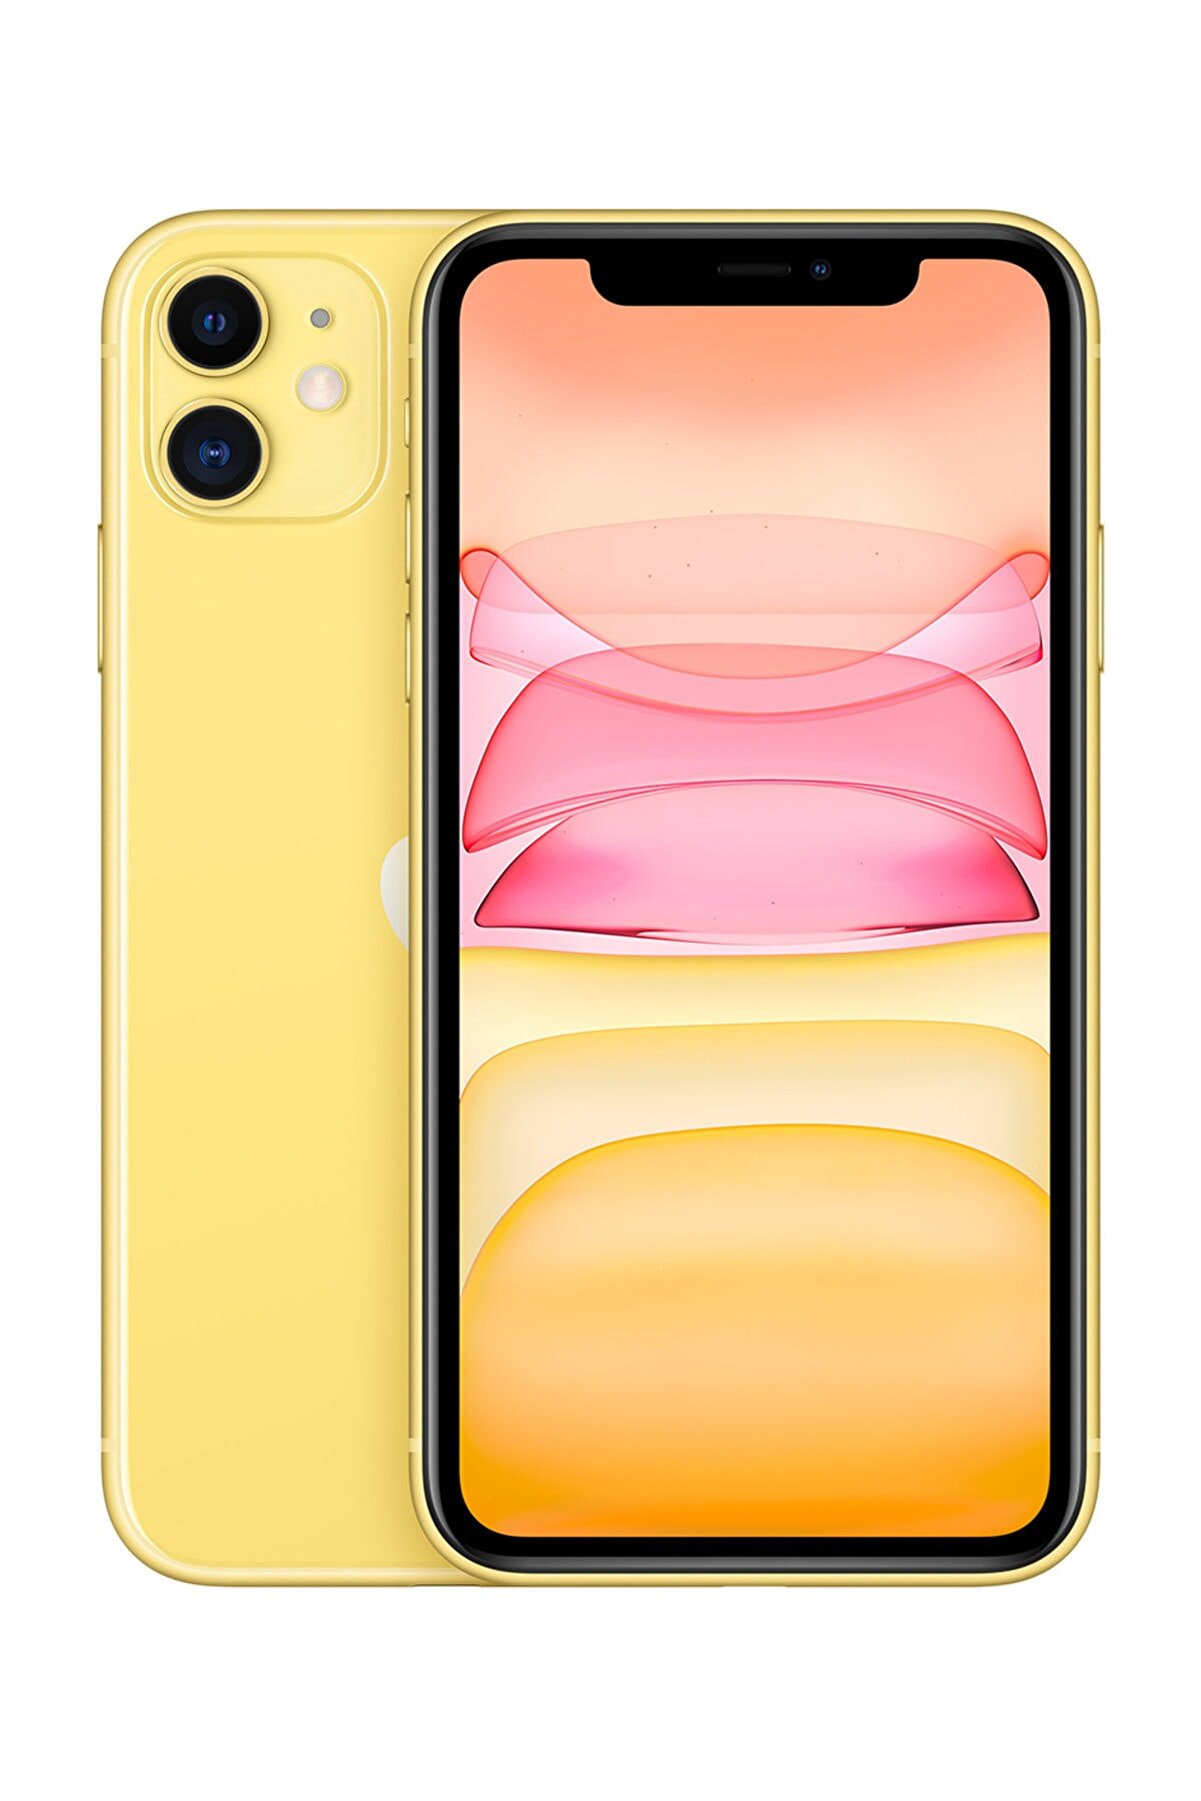 Apple iPhone 11 128 GB Sarı Cep Telefonu Aksesuarsız Kutu (Apple Türkiye 
Garantili)